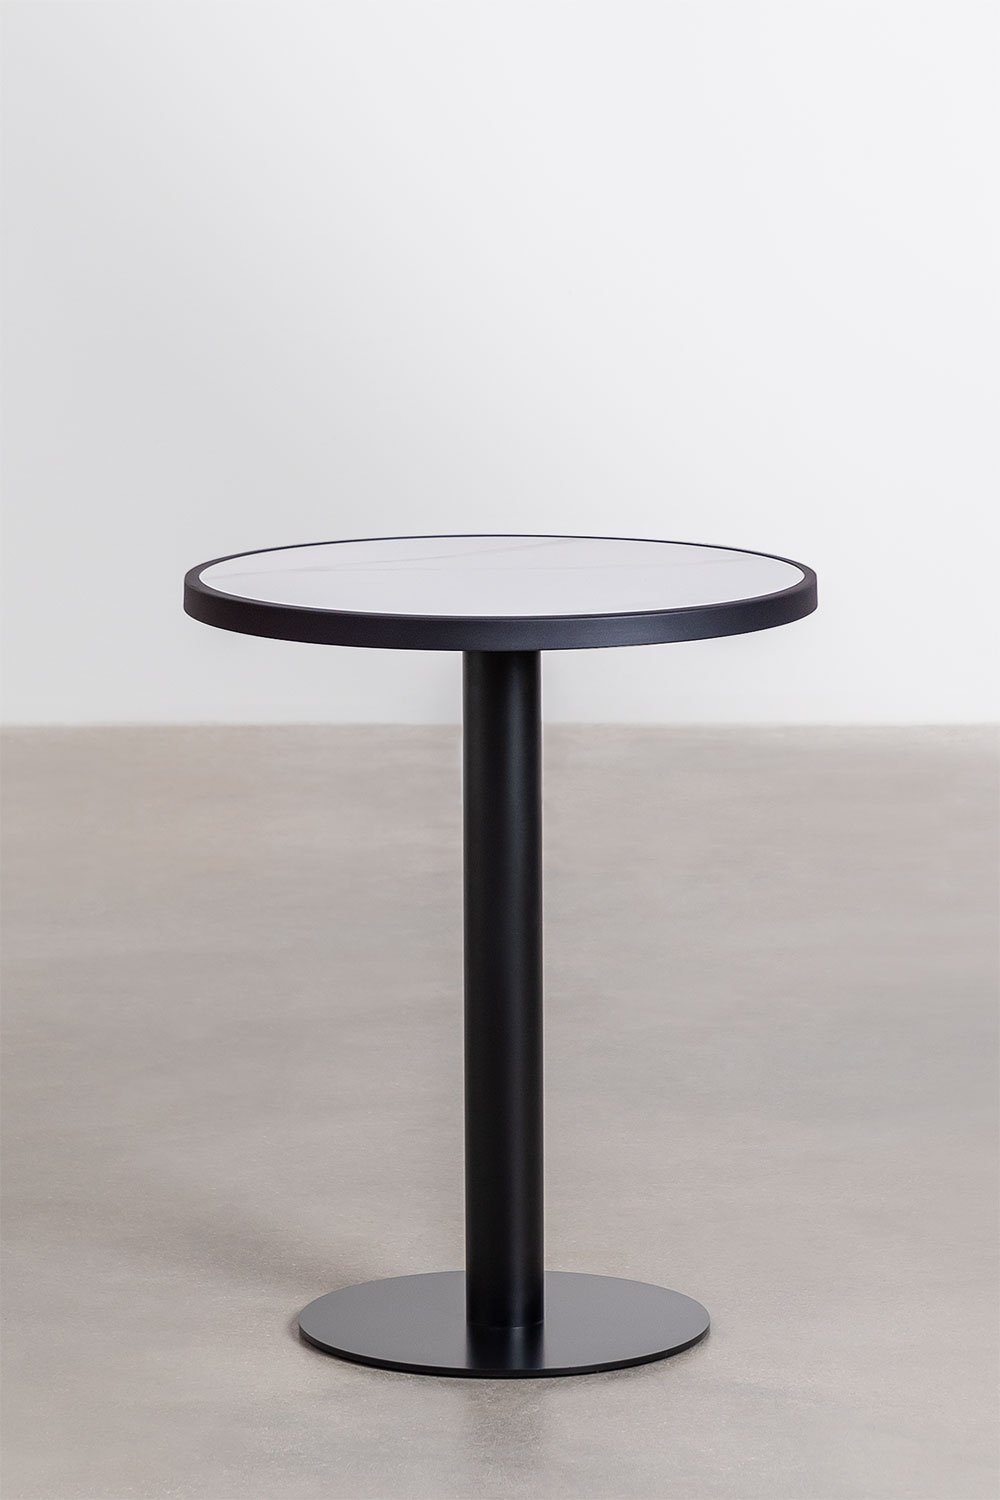 Table de Bar Ronde en Grès (Ø60 cm) Caramel, image de la galerie 1